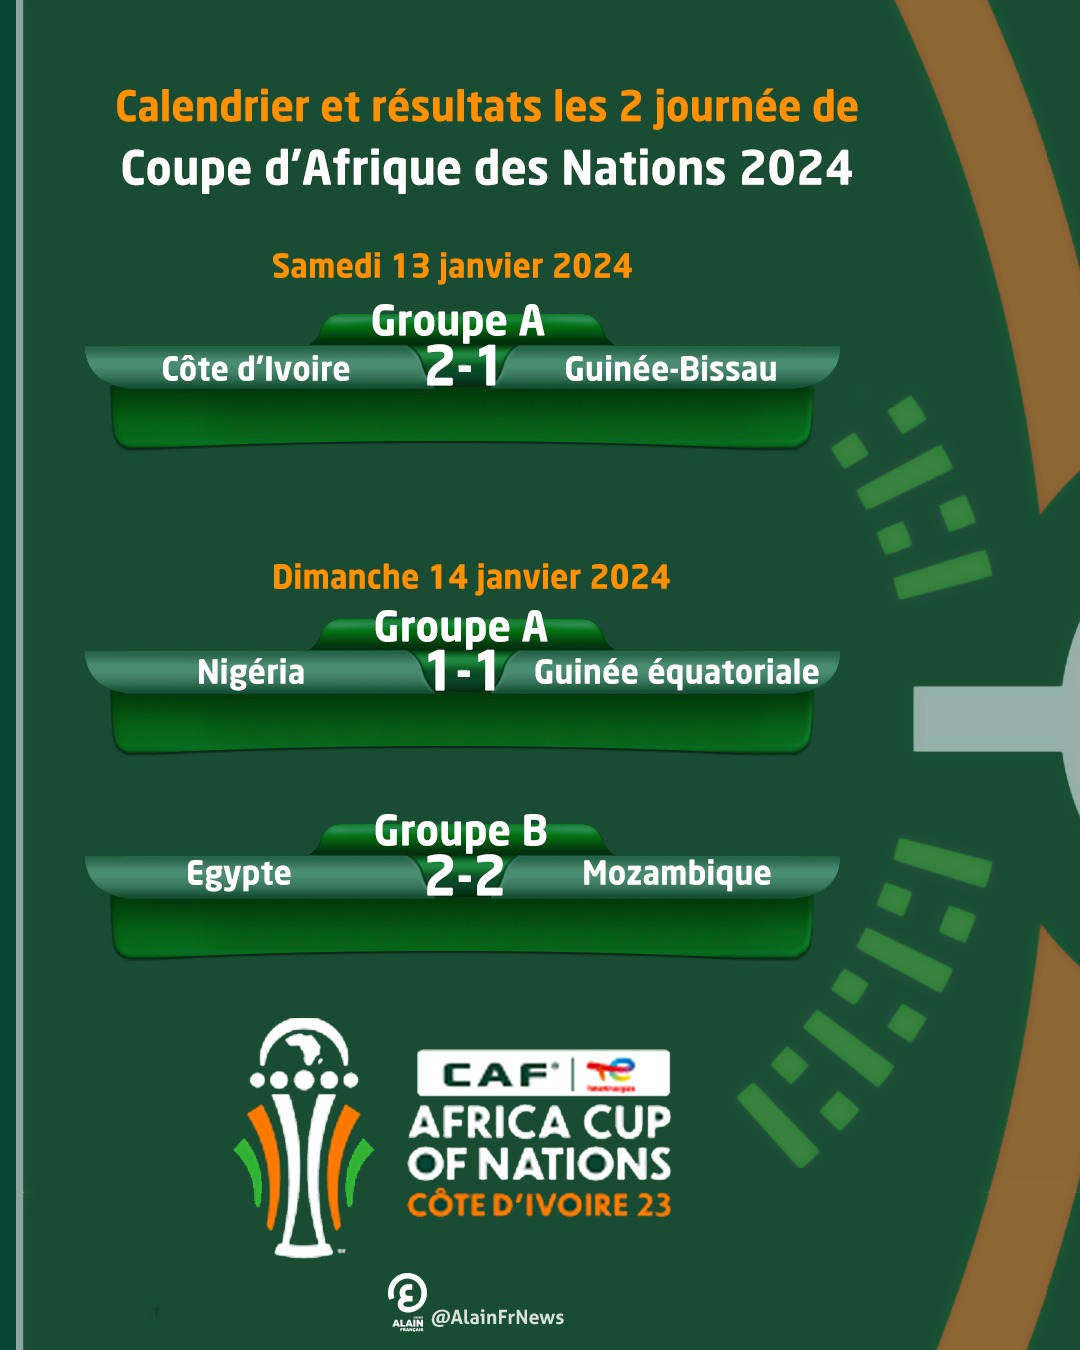 Calendrier CAN 2024 Programme et Résultats de la Coupe d’Afrique des